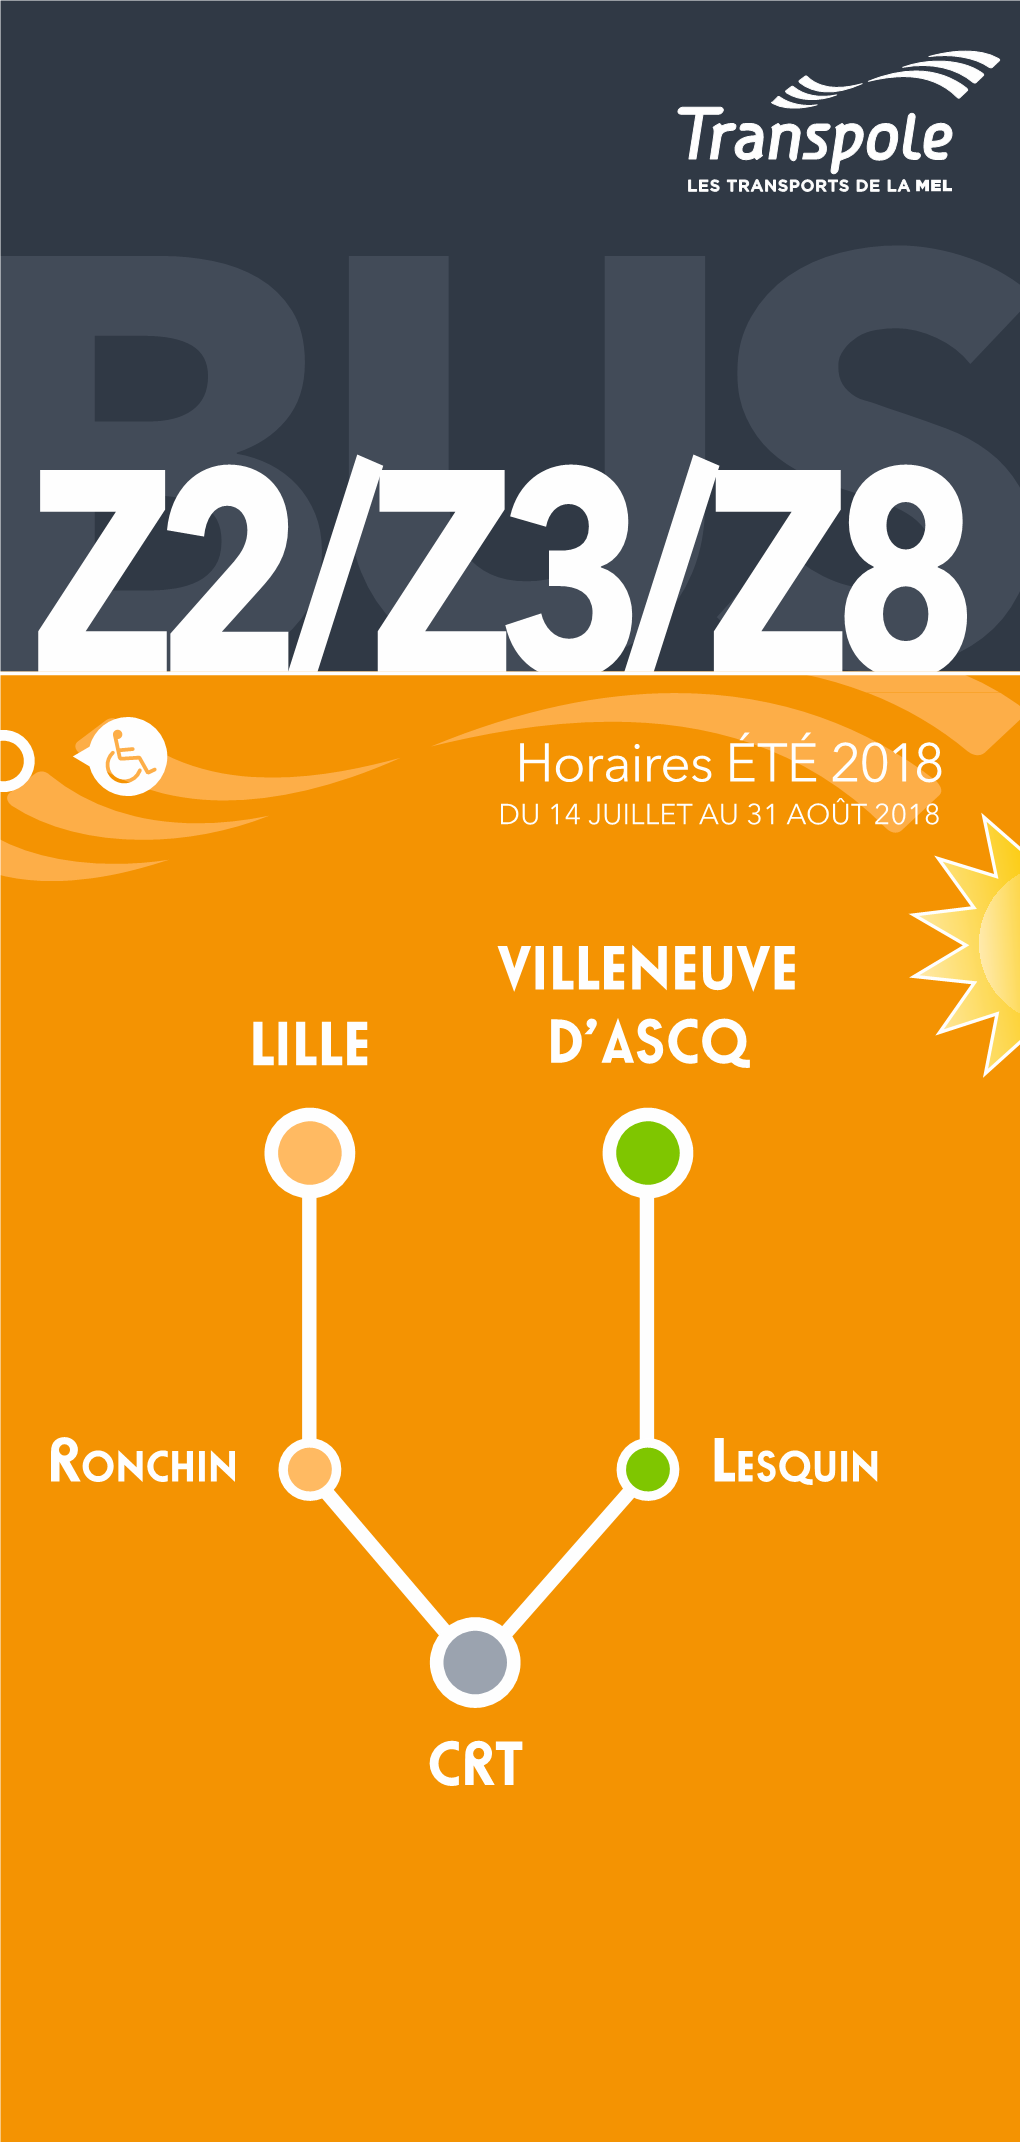 Lille Crt Villeneuve D'ascq